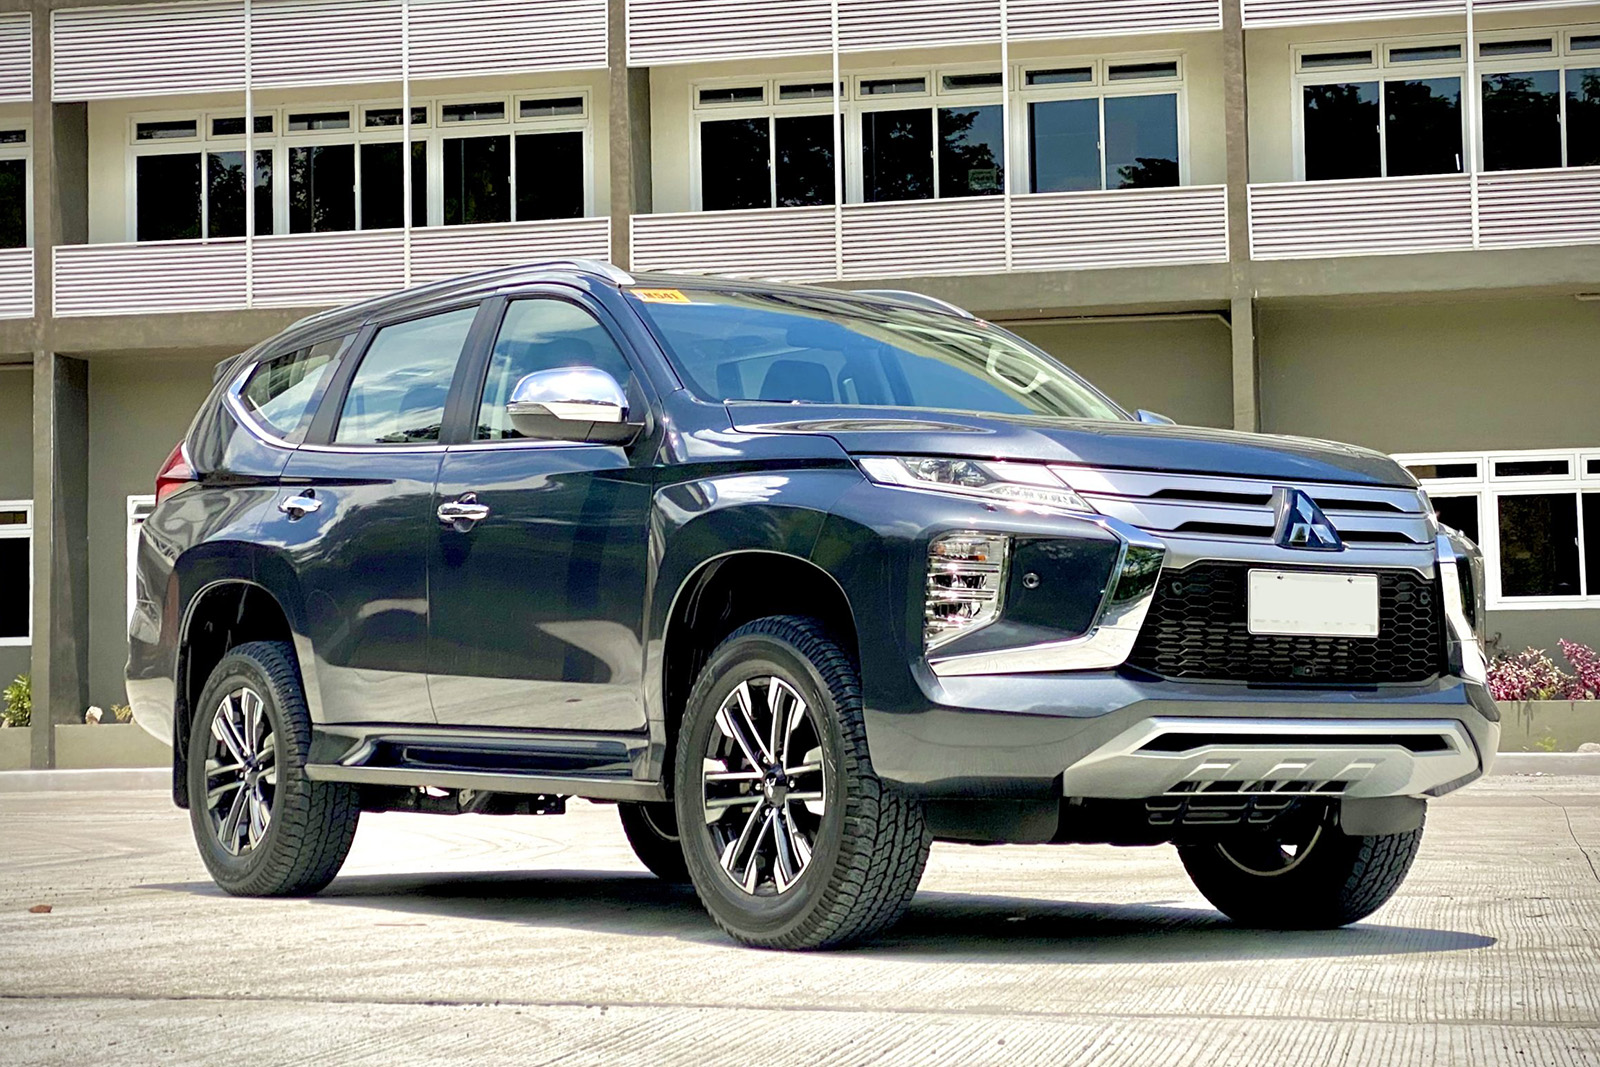 Mitsubishi Motors Việt Nam  MITSUBISHI PAJERO SPORT 2020 MỚI  VẬN HÀNH  MẠNH MẼ AN TOÀN CAO CẤP TIỆN ÍCH THÔNG MINH